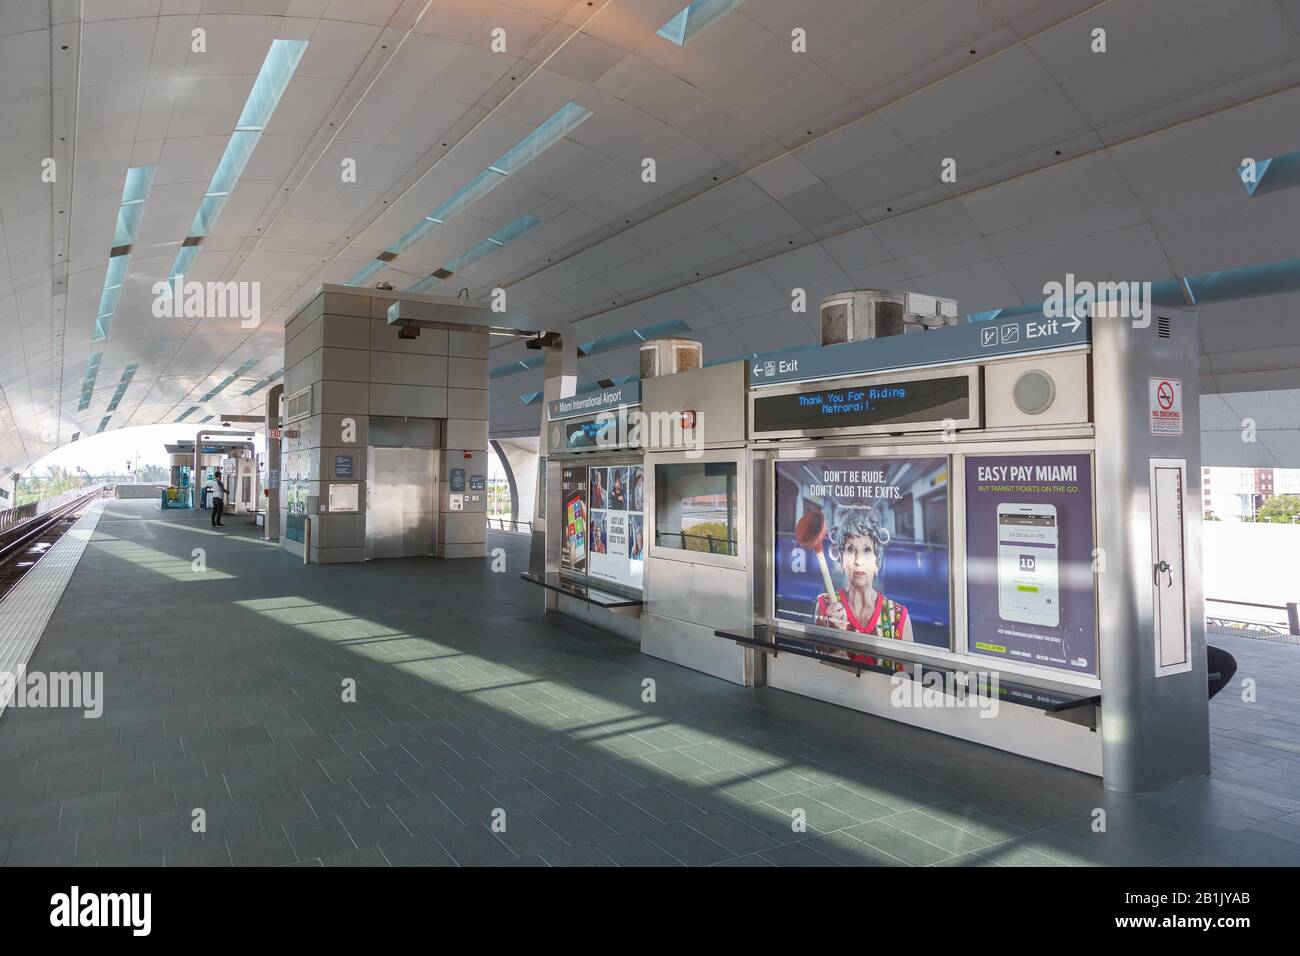 Miami, Florida – April 3, 2019: Metrorail Metro Station at Miami airport (MIA) in Florida. Stock Photo